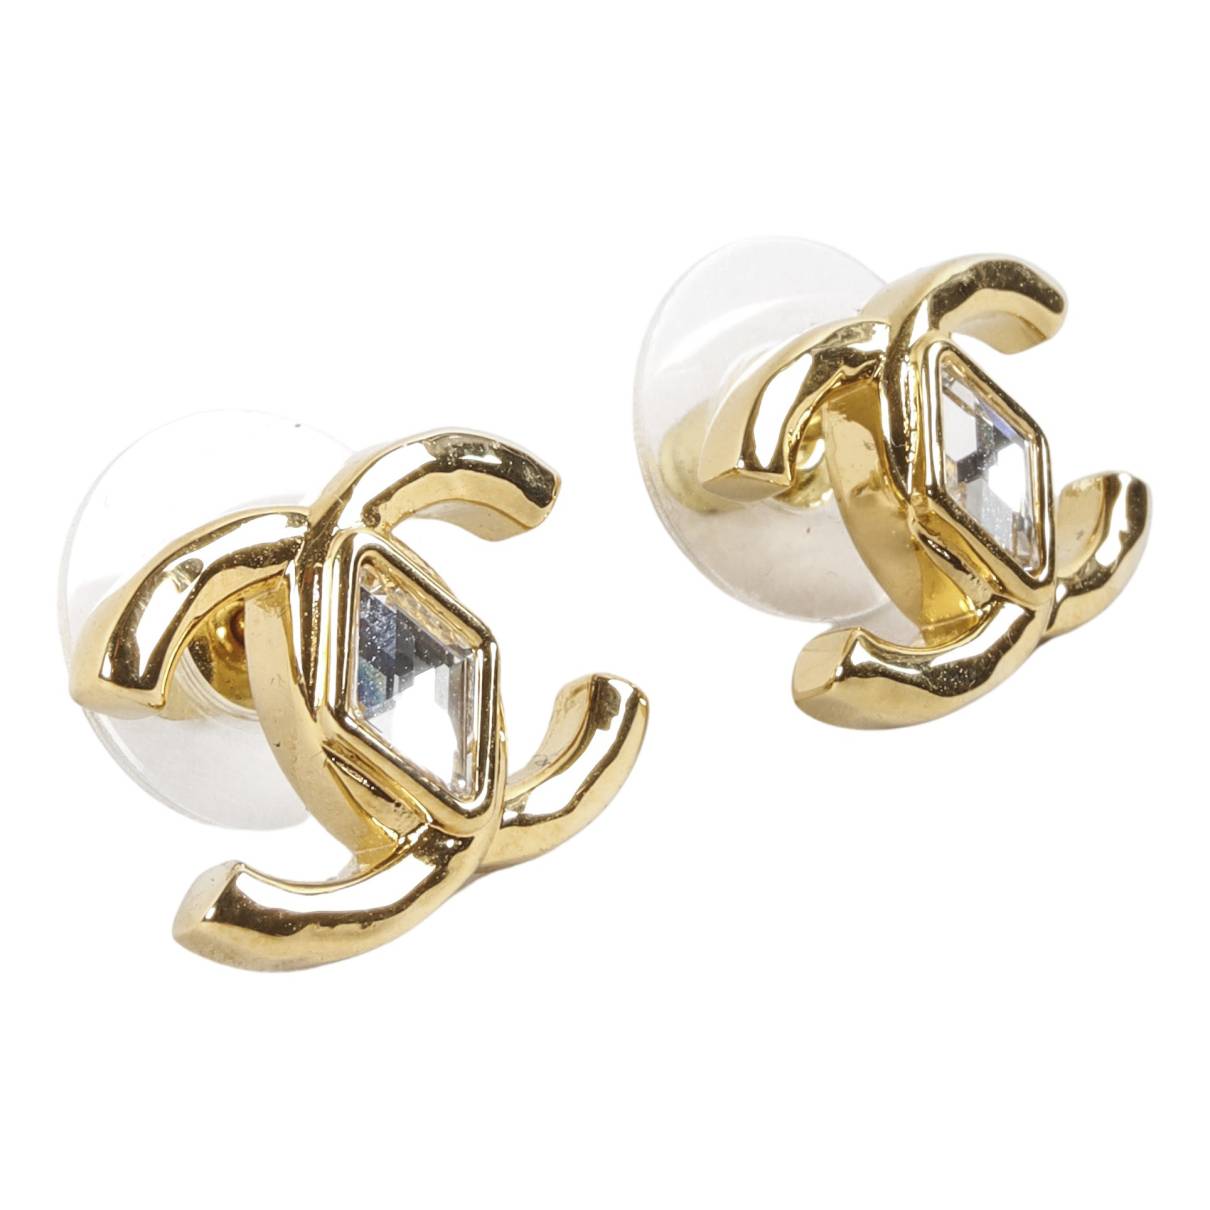 Cc earrings Chanel Gold in Metal - 30494751